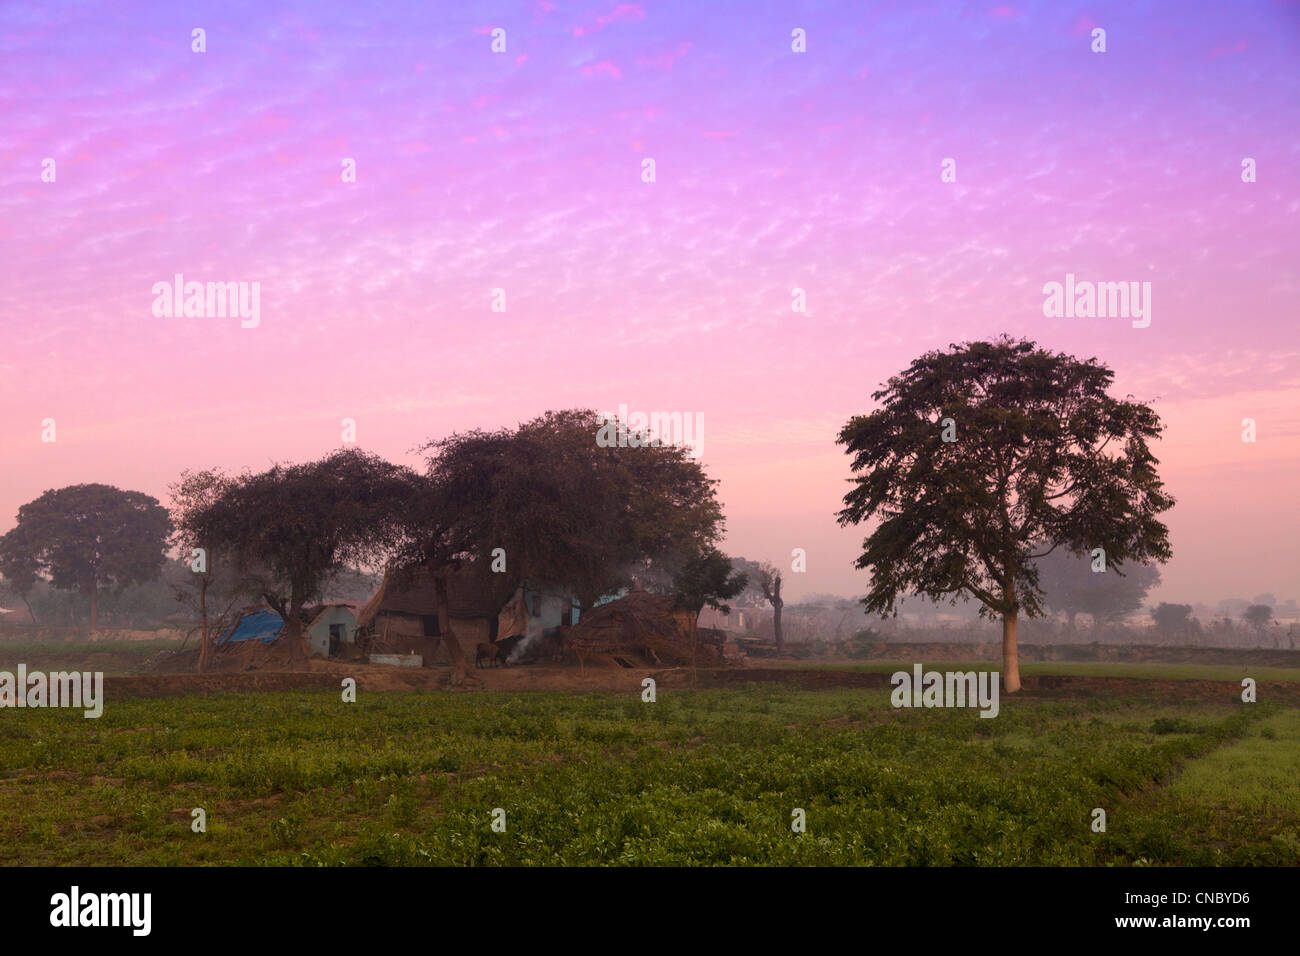 Indien, Uttar Pradesh, Agra, typisch ländlichen Blick auf Felder und Bauernhof Wohnung Stockfoto